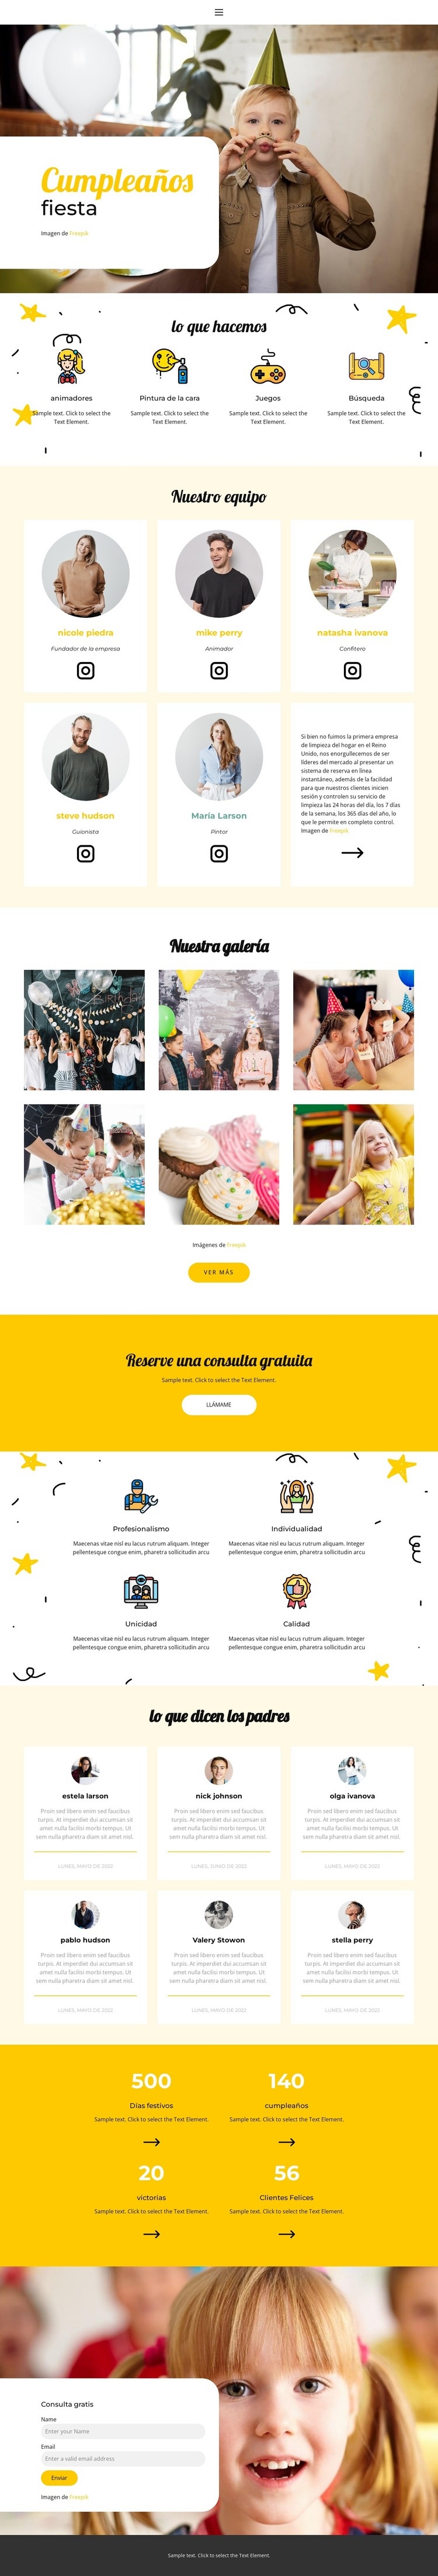 cumpleaños de niños Maqueta de sitio web